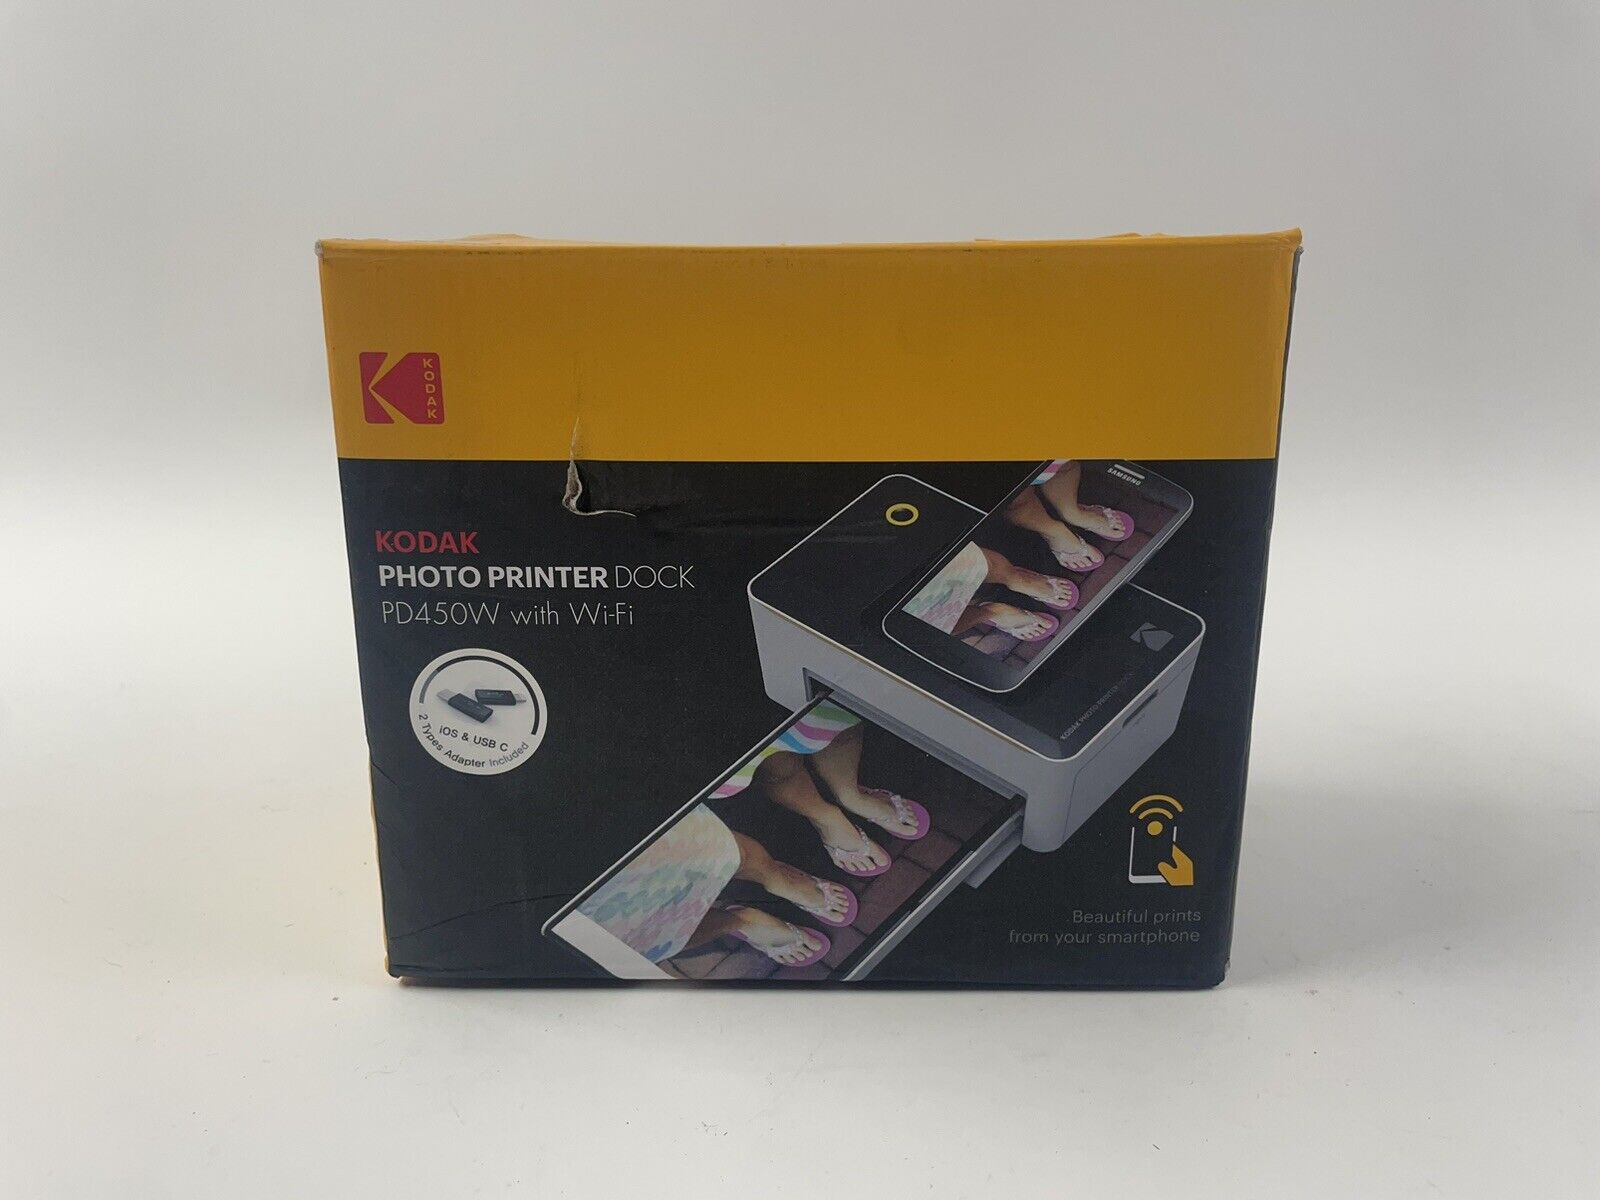 Kodak Photo Printer Dock PD450W with Wifi